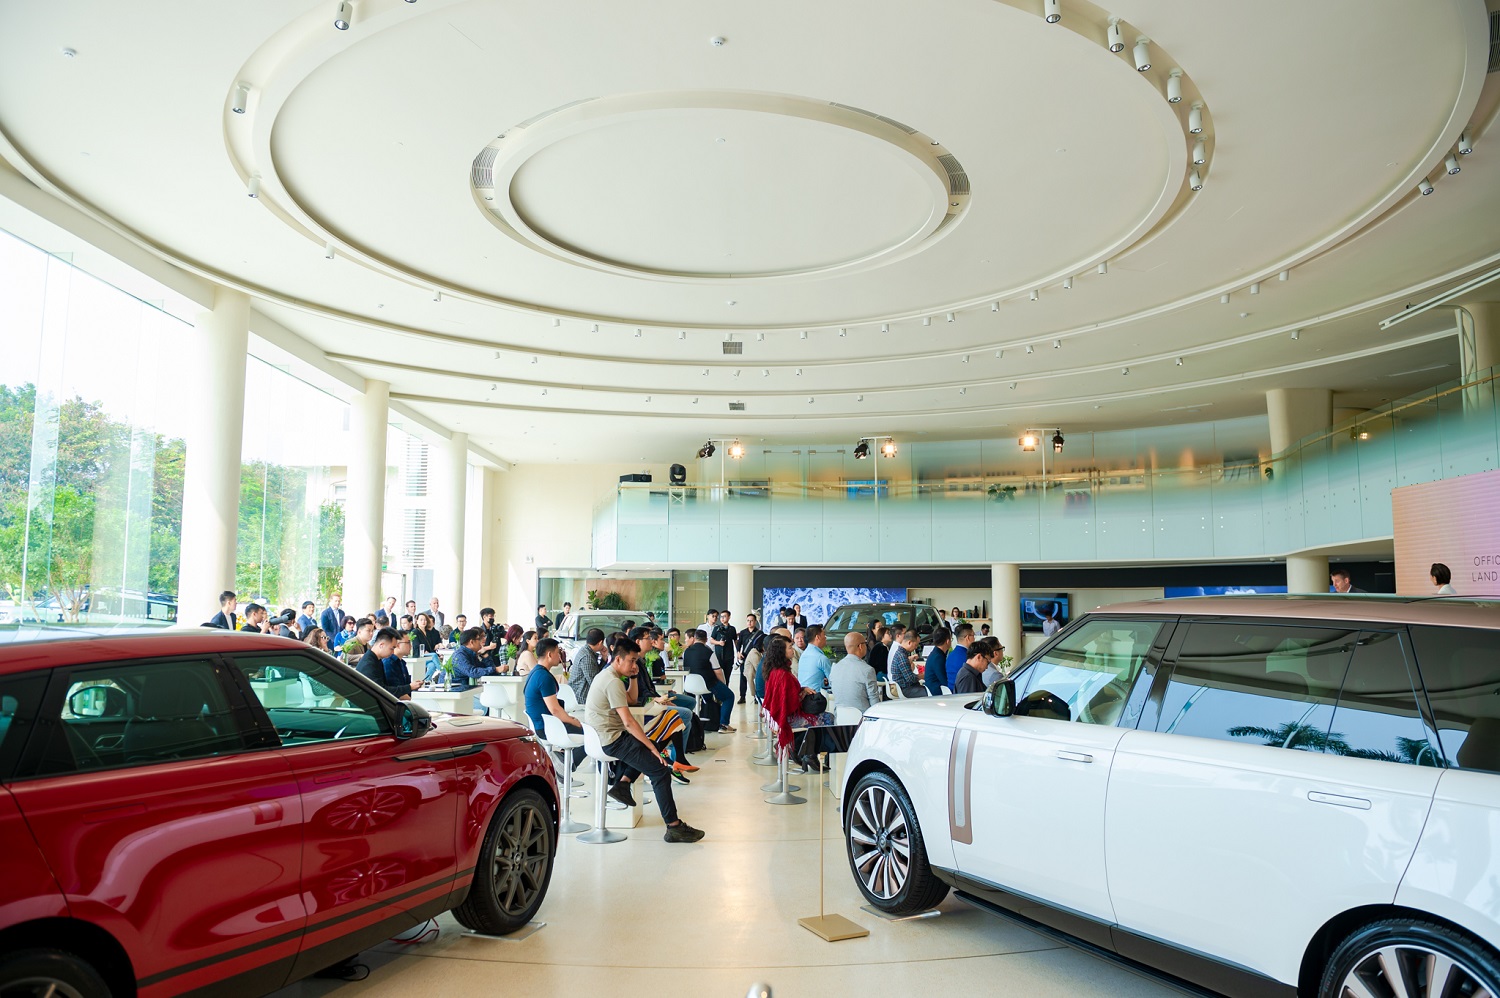 Khu vực tiếp khách ở trung tâm tầng trệt dẫn đến Không gian trưng bày các thương hiệu, nơi Range Rover, Defender và Discovery thể hiện bản sắc riêng của mình. Lấy cảm hứng từ trung tâm điêu khắc, những chiếc xe được trưng bày như các tác phẩm nghệ thuật